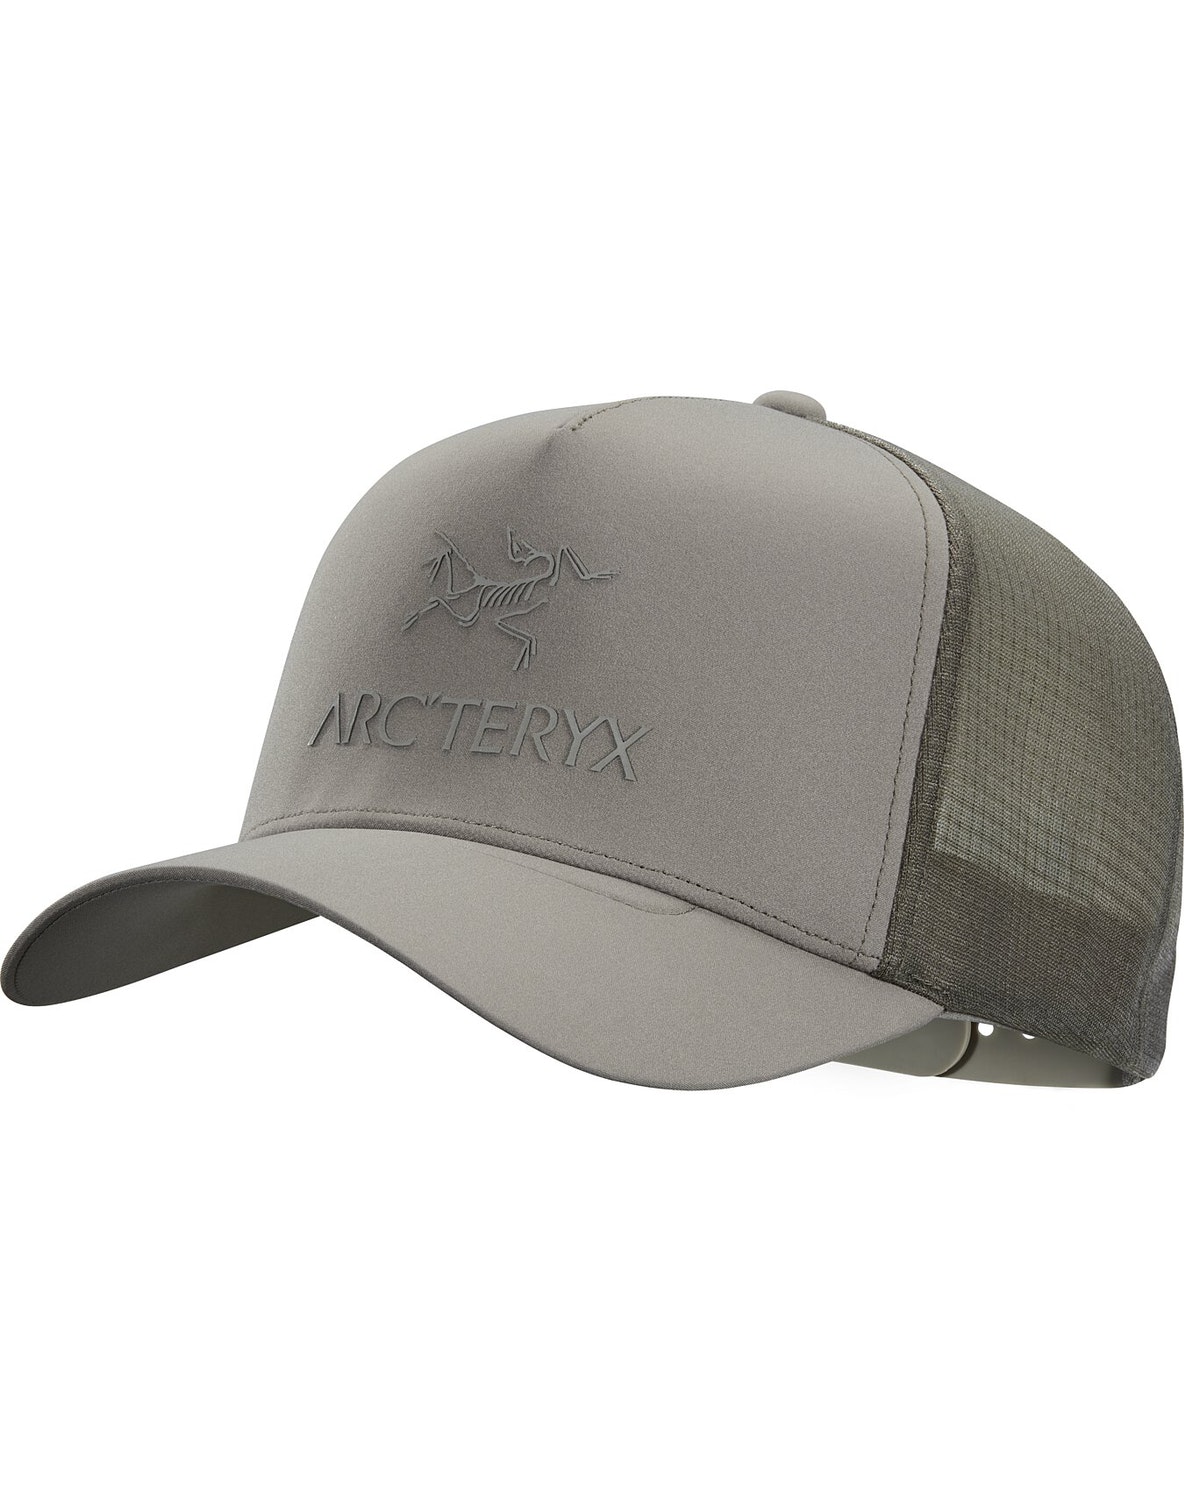 Hats Arc'teryx Logo Uomo Marroni Chiaro - IT-4734175